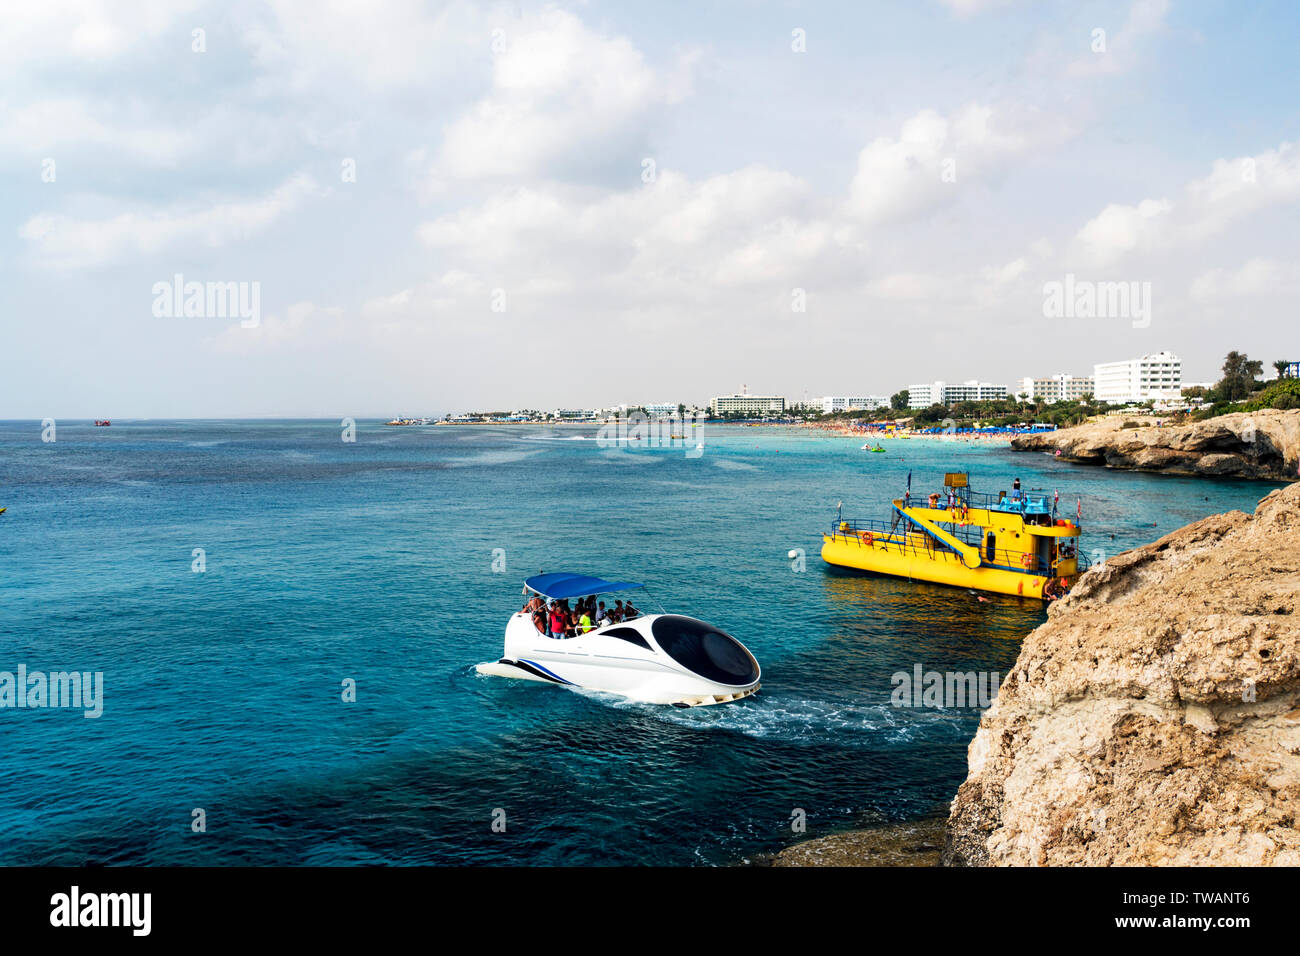 Sportboote auf dem Mittelmeer. Blick auf die Lagune in der Nähe von Kap Greko von Ayia Napa und Protaras auf Zypern Insel, Mittelmeer. Stockfoto